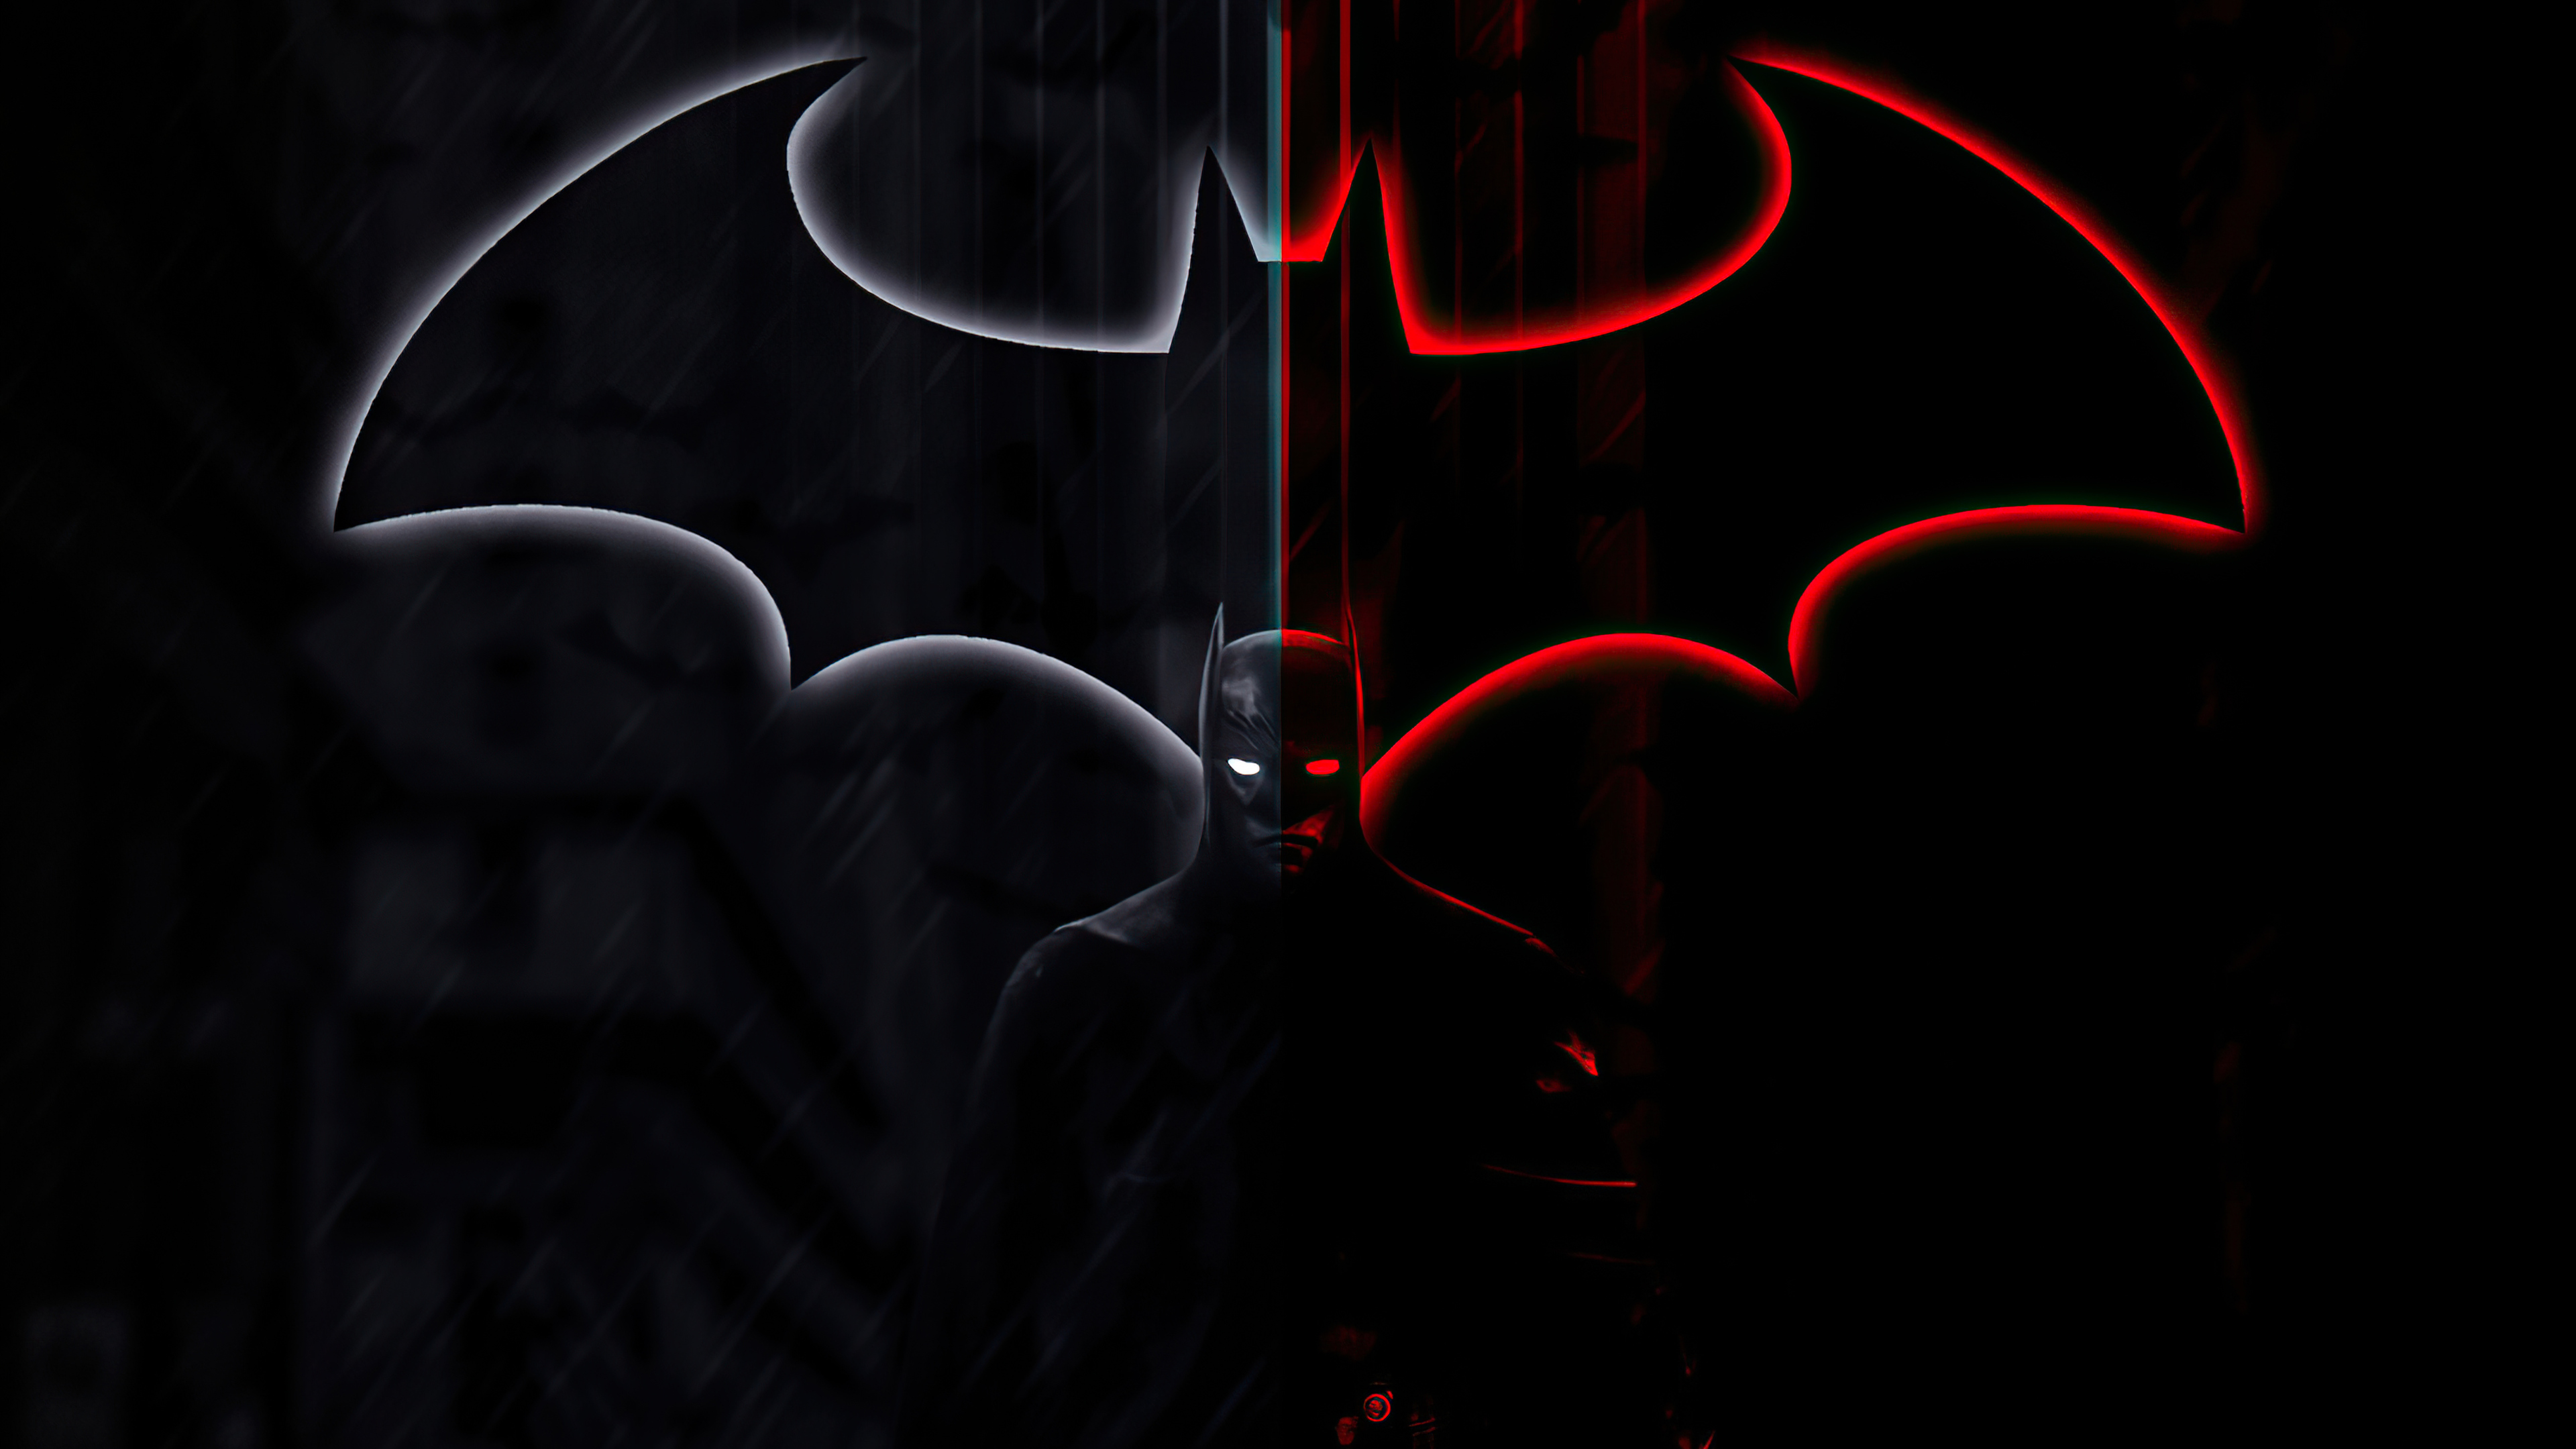 7680x4320 Resolution Batman 4k Cool 8K Wallpaper - Wallpapers Den